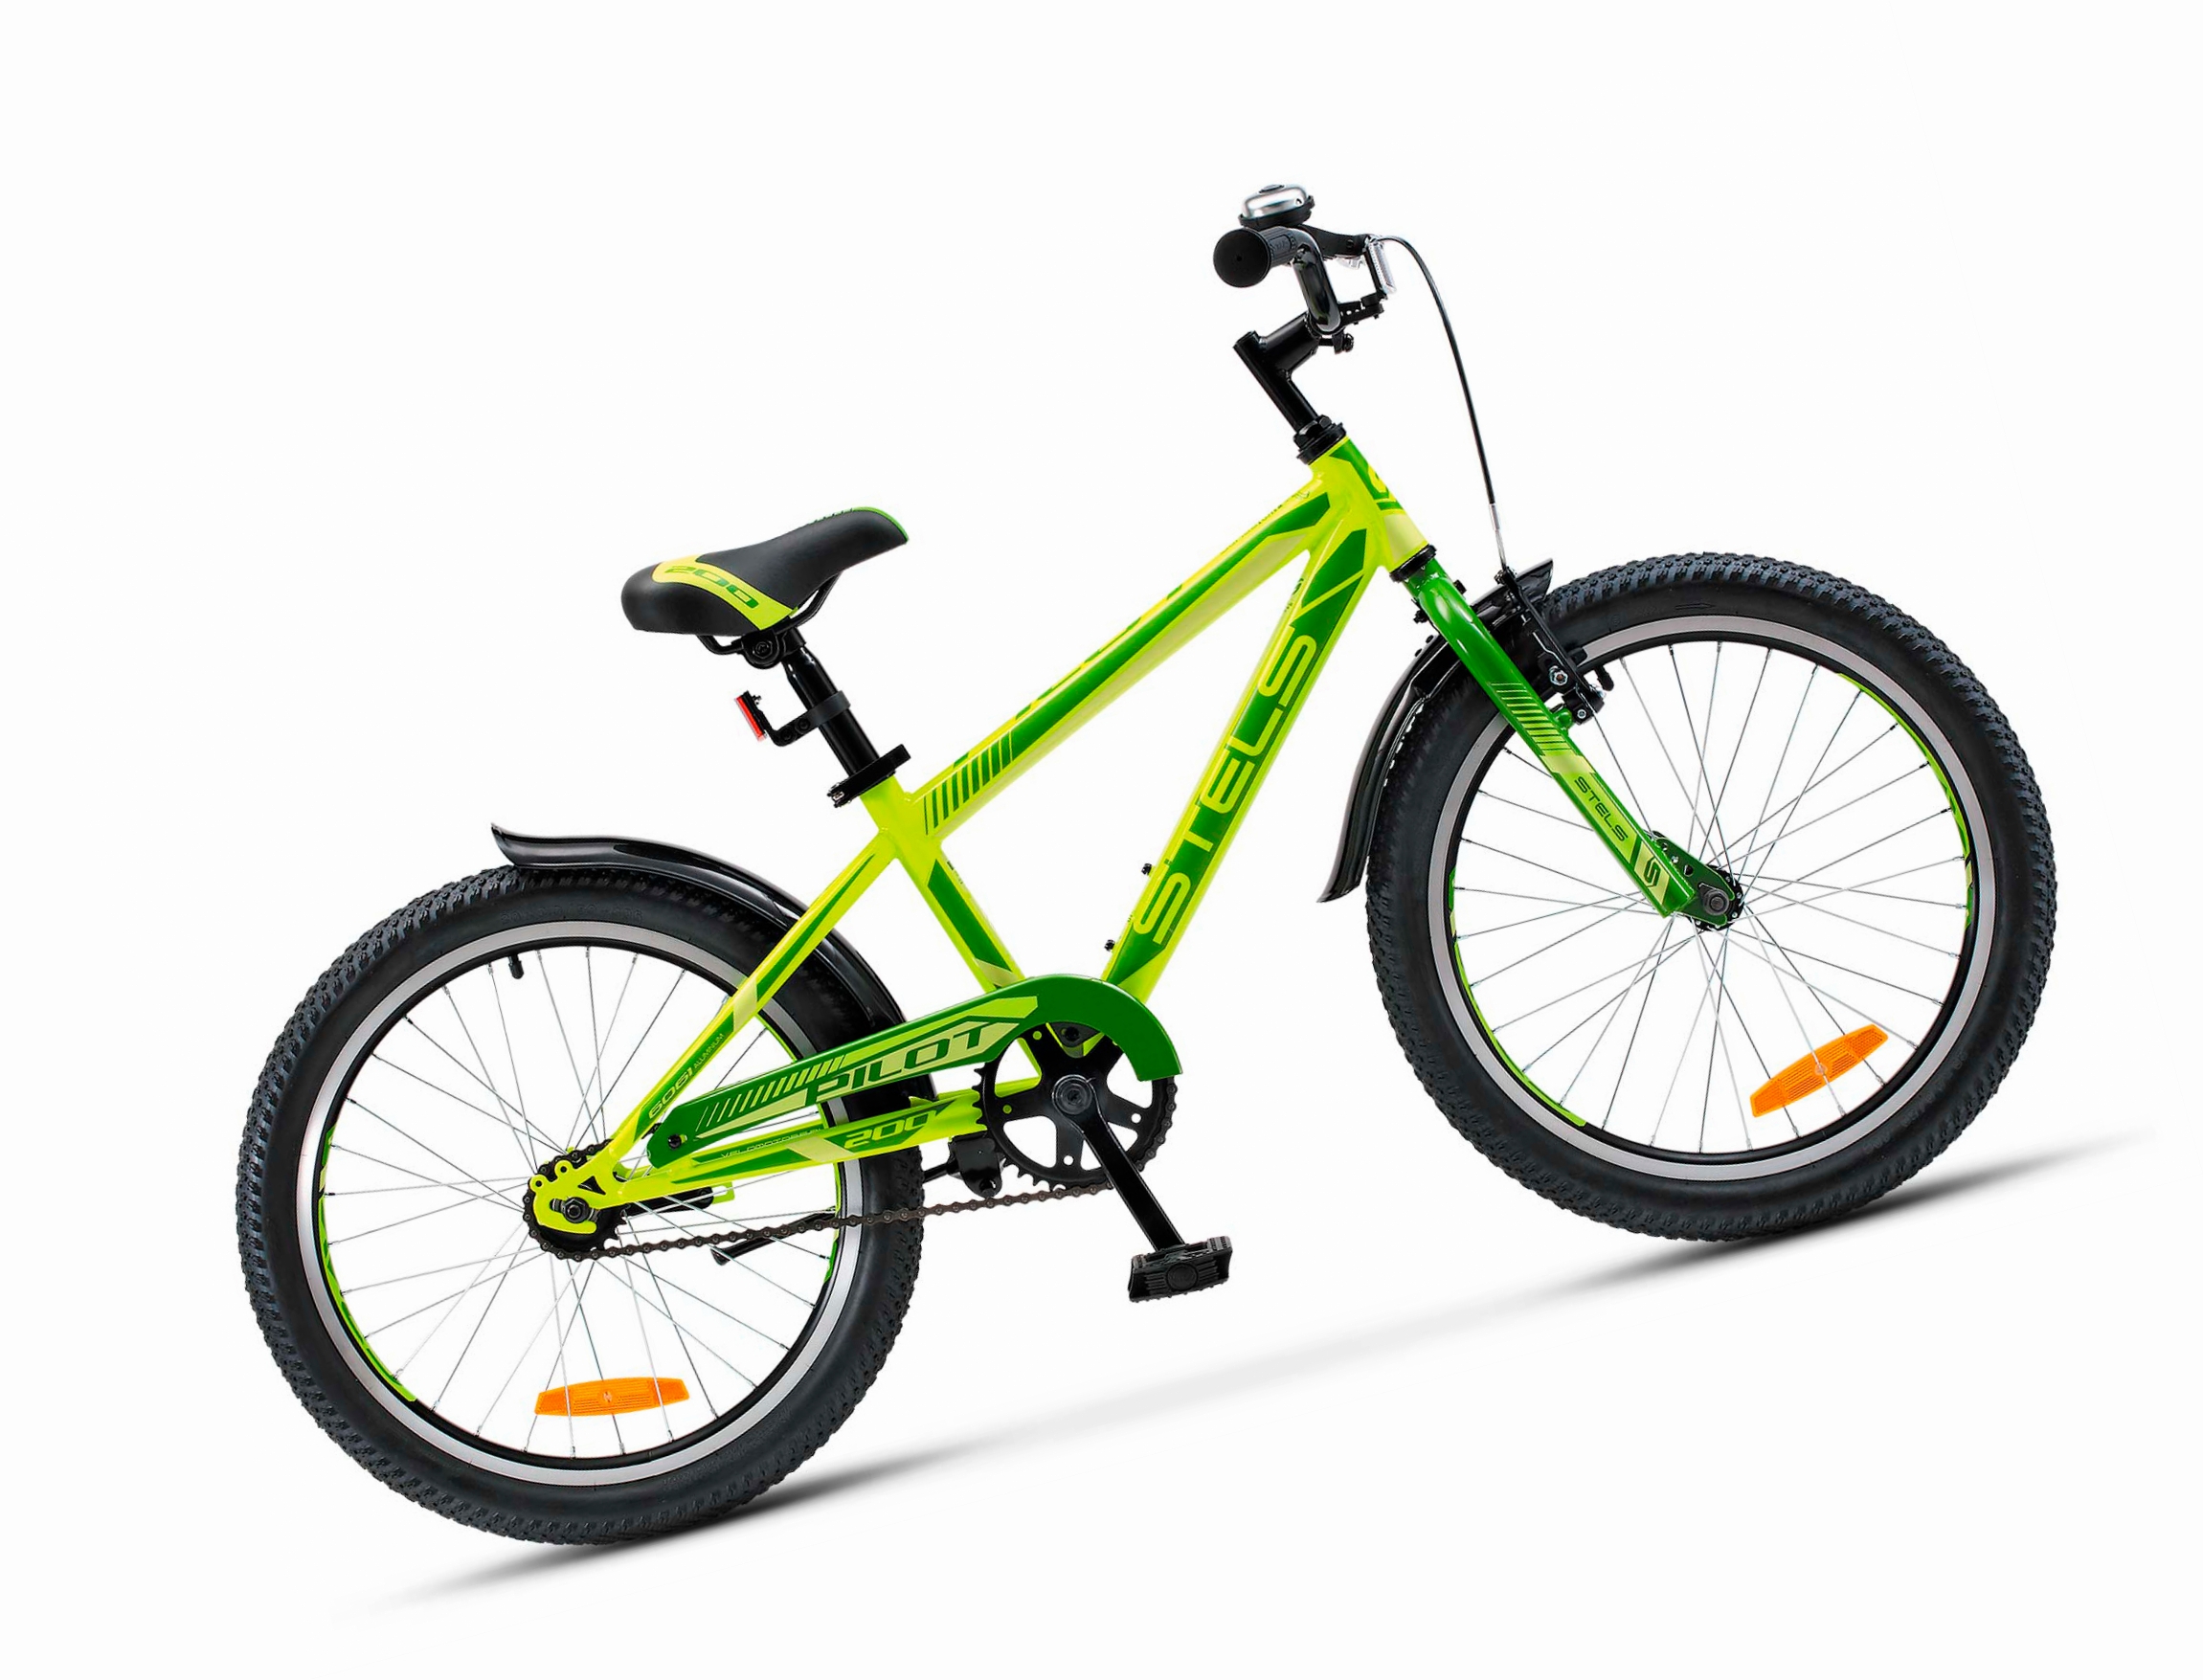 Велосипед 20 горный STELS Pilot 200 Gent (2018) количество скоростей 1 рама сталь 11 неоновый/зеленый